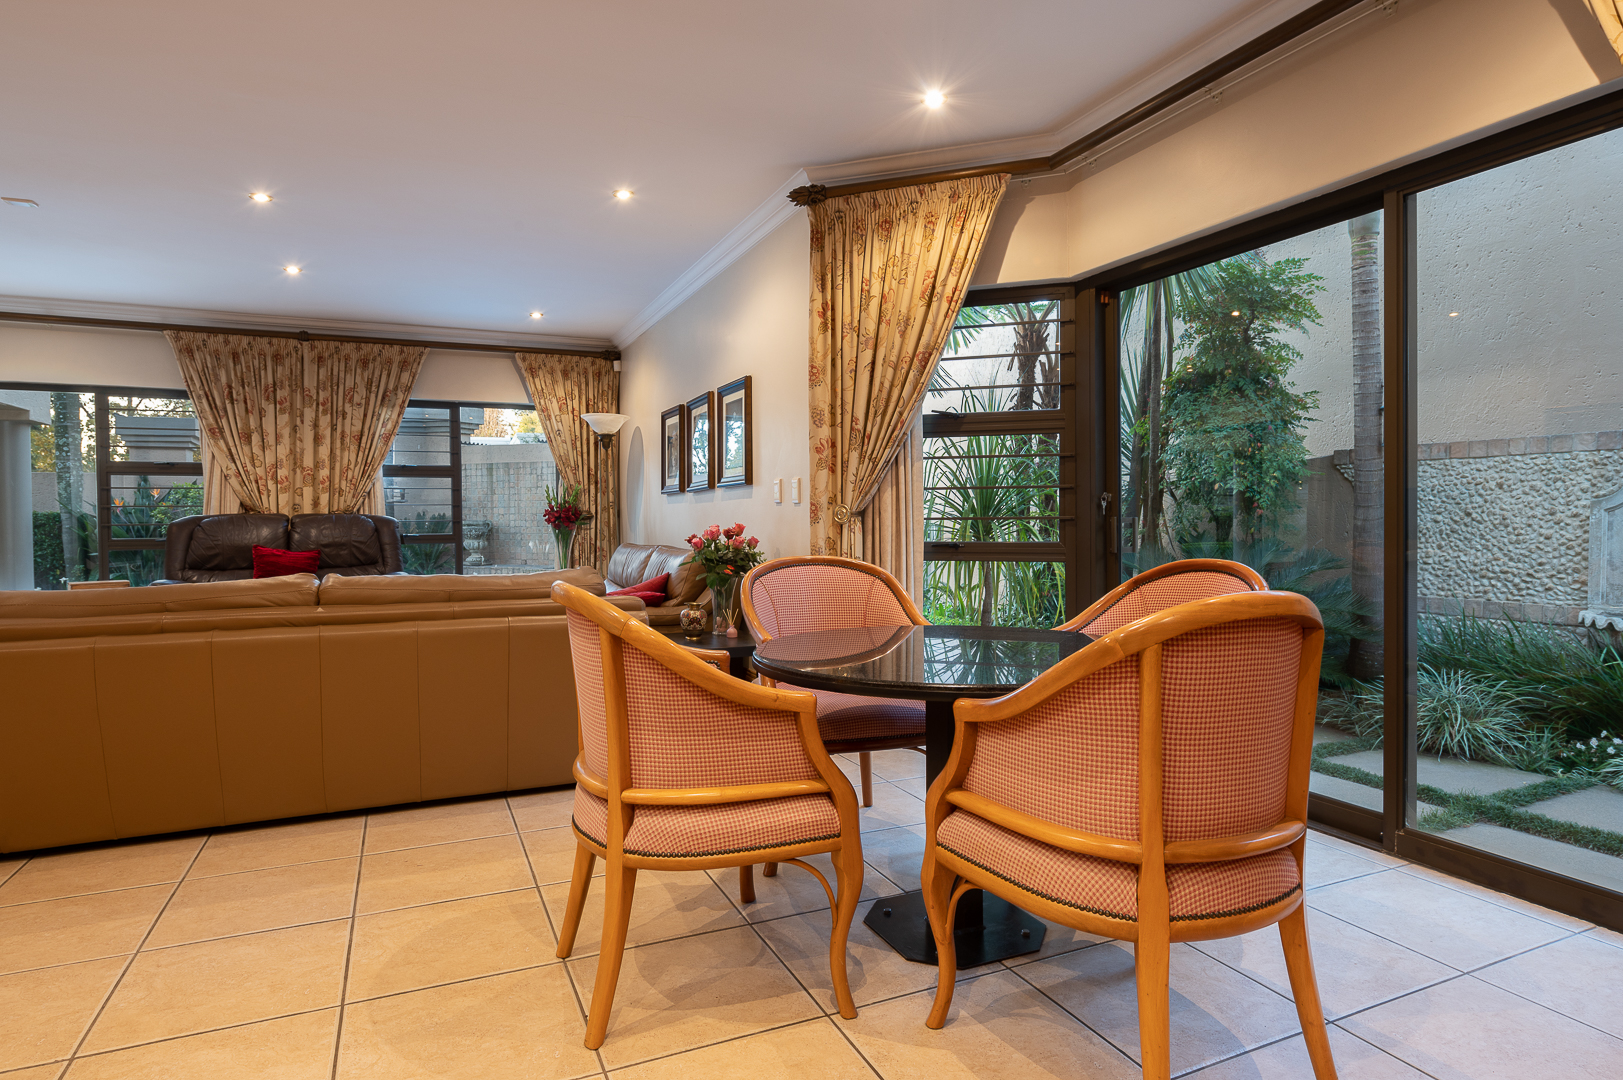 To Let 4 Bedroom Property for Rent in Bedfordview Gauteng